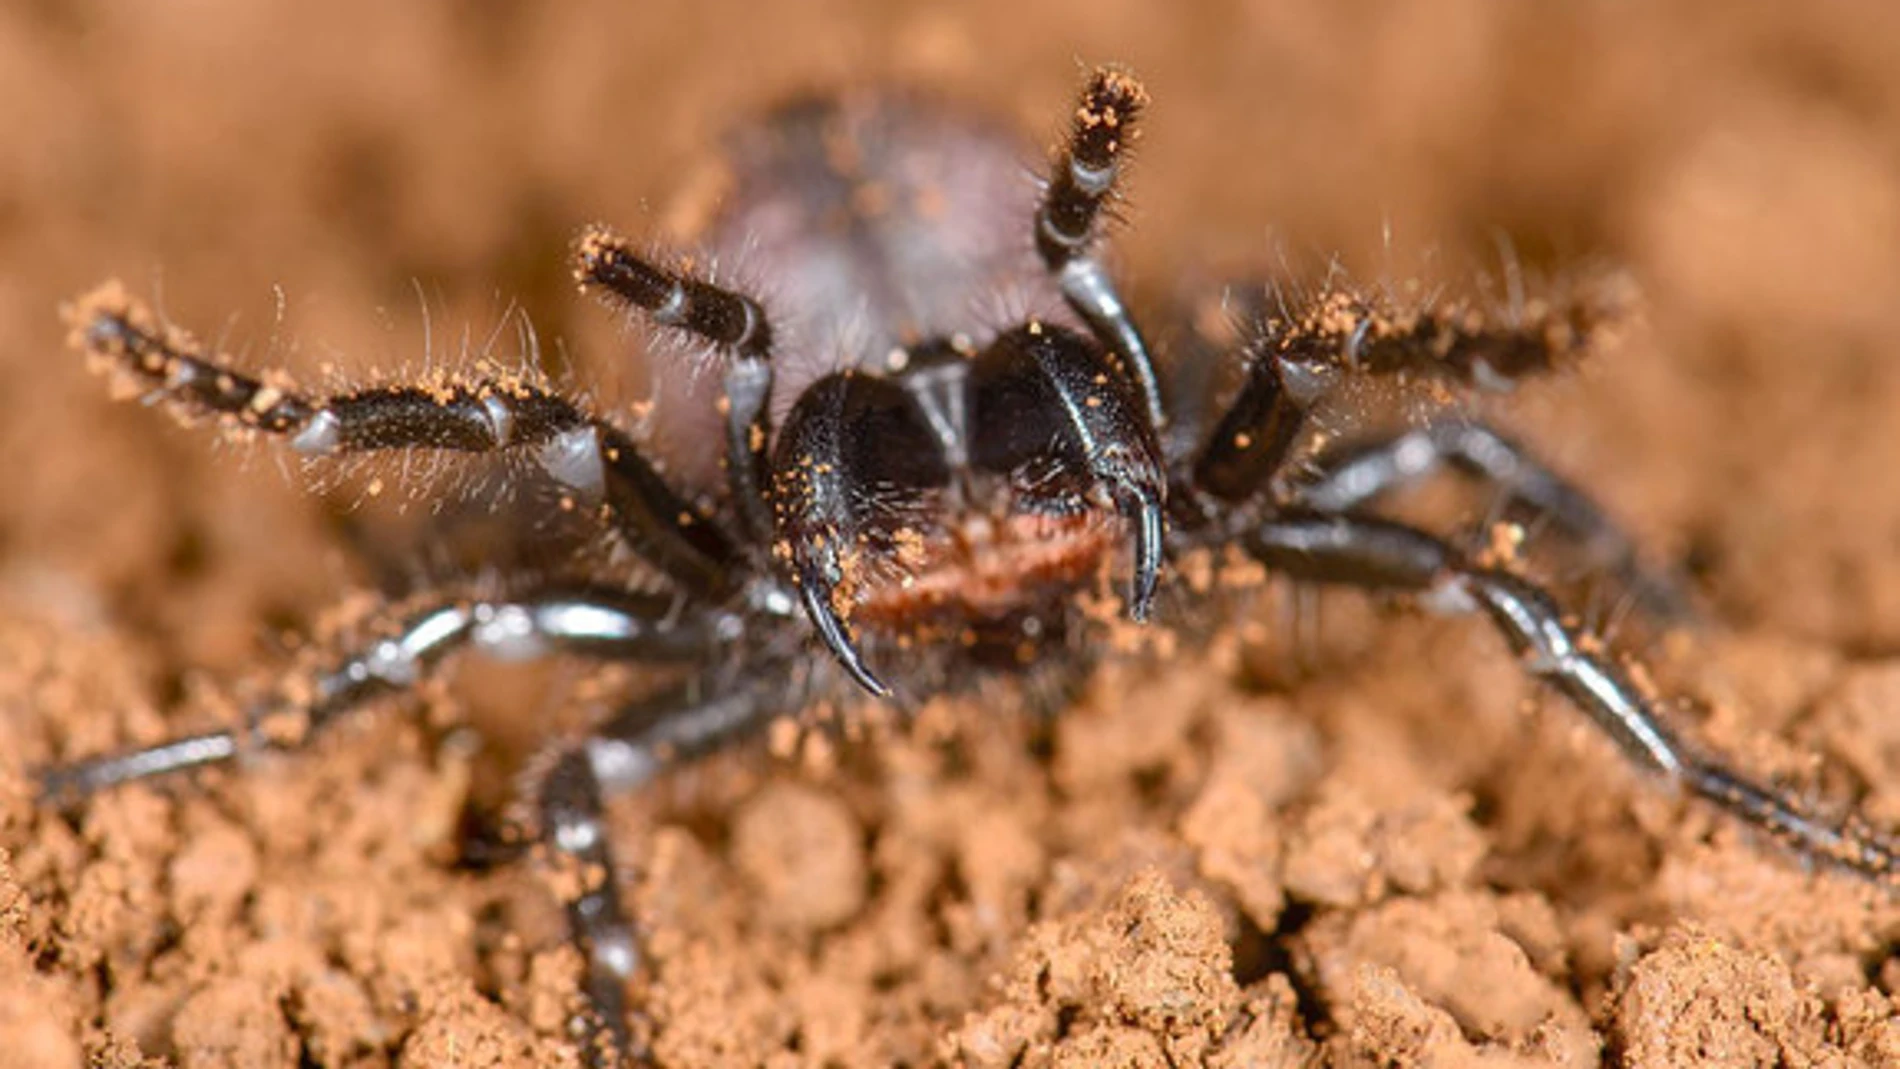 Un ejemplar de araña de tela de embudo de la especie Hadronyche venenata. / Marshal Hedin